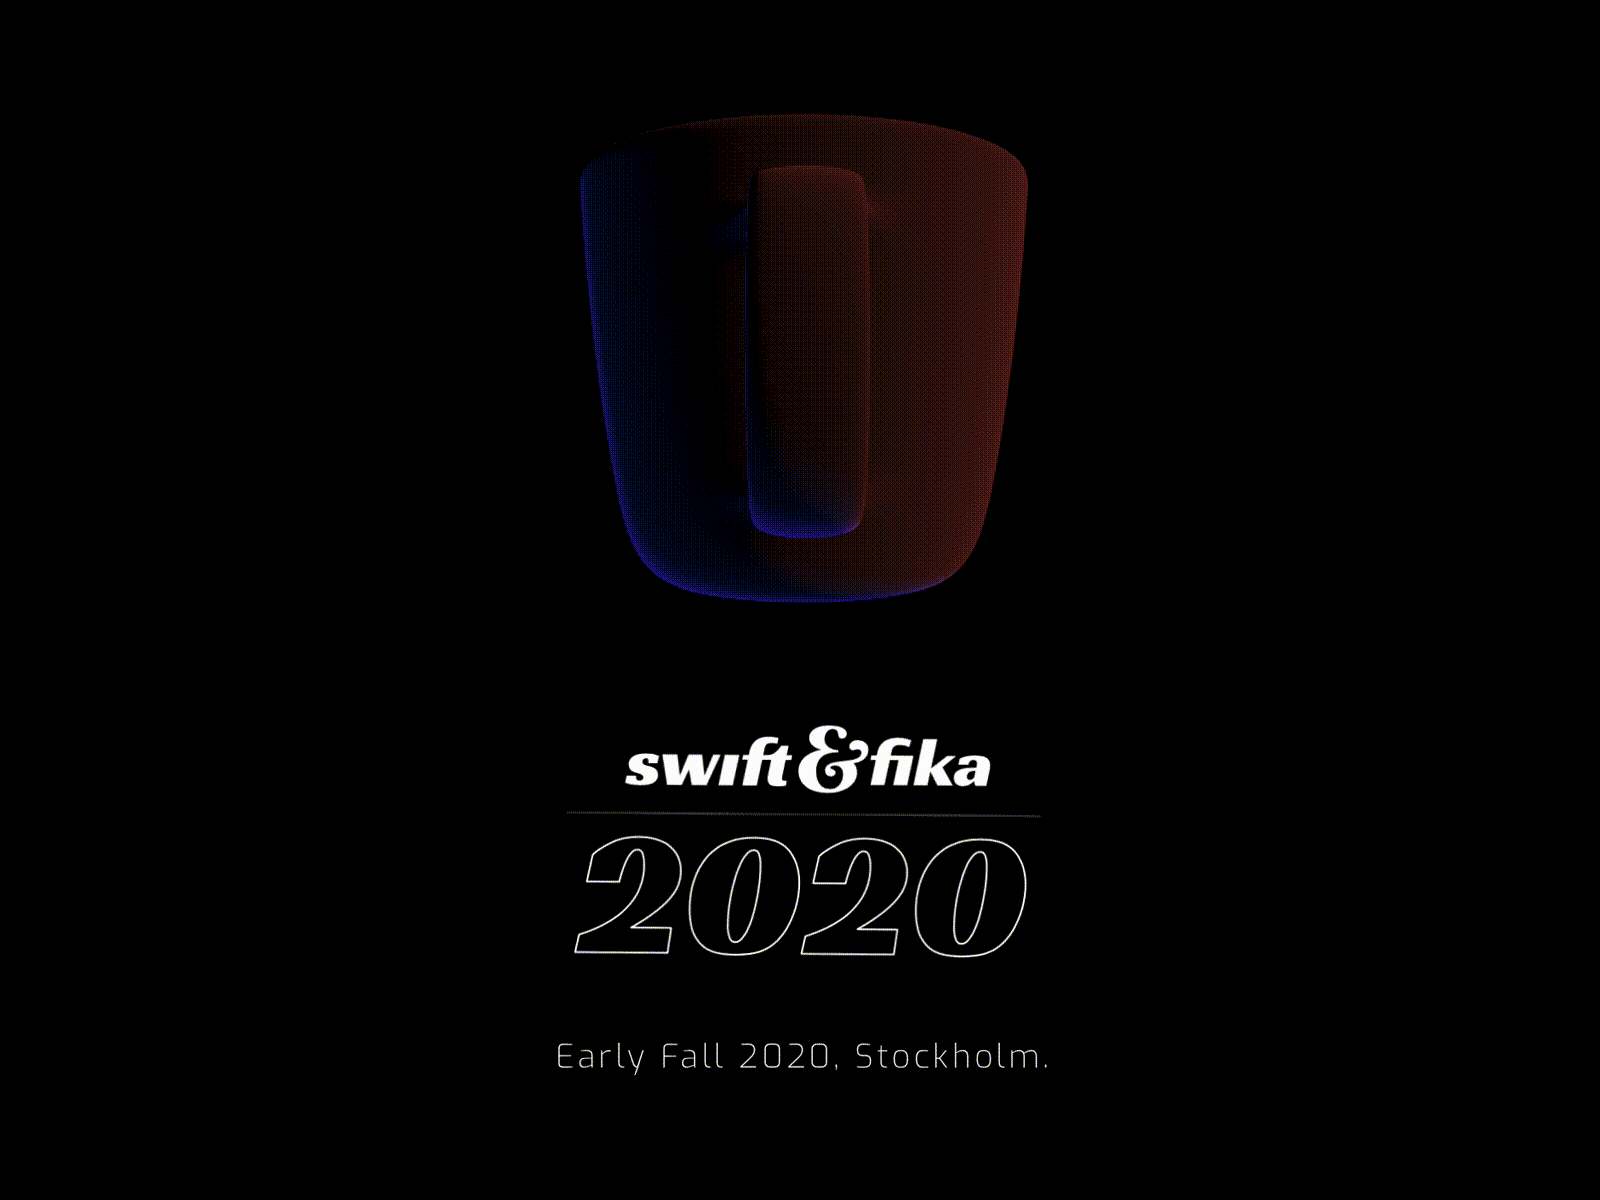 Swift & Fika 2020 Teaser Site 3d lighting